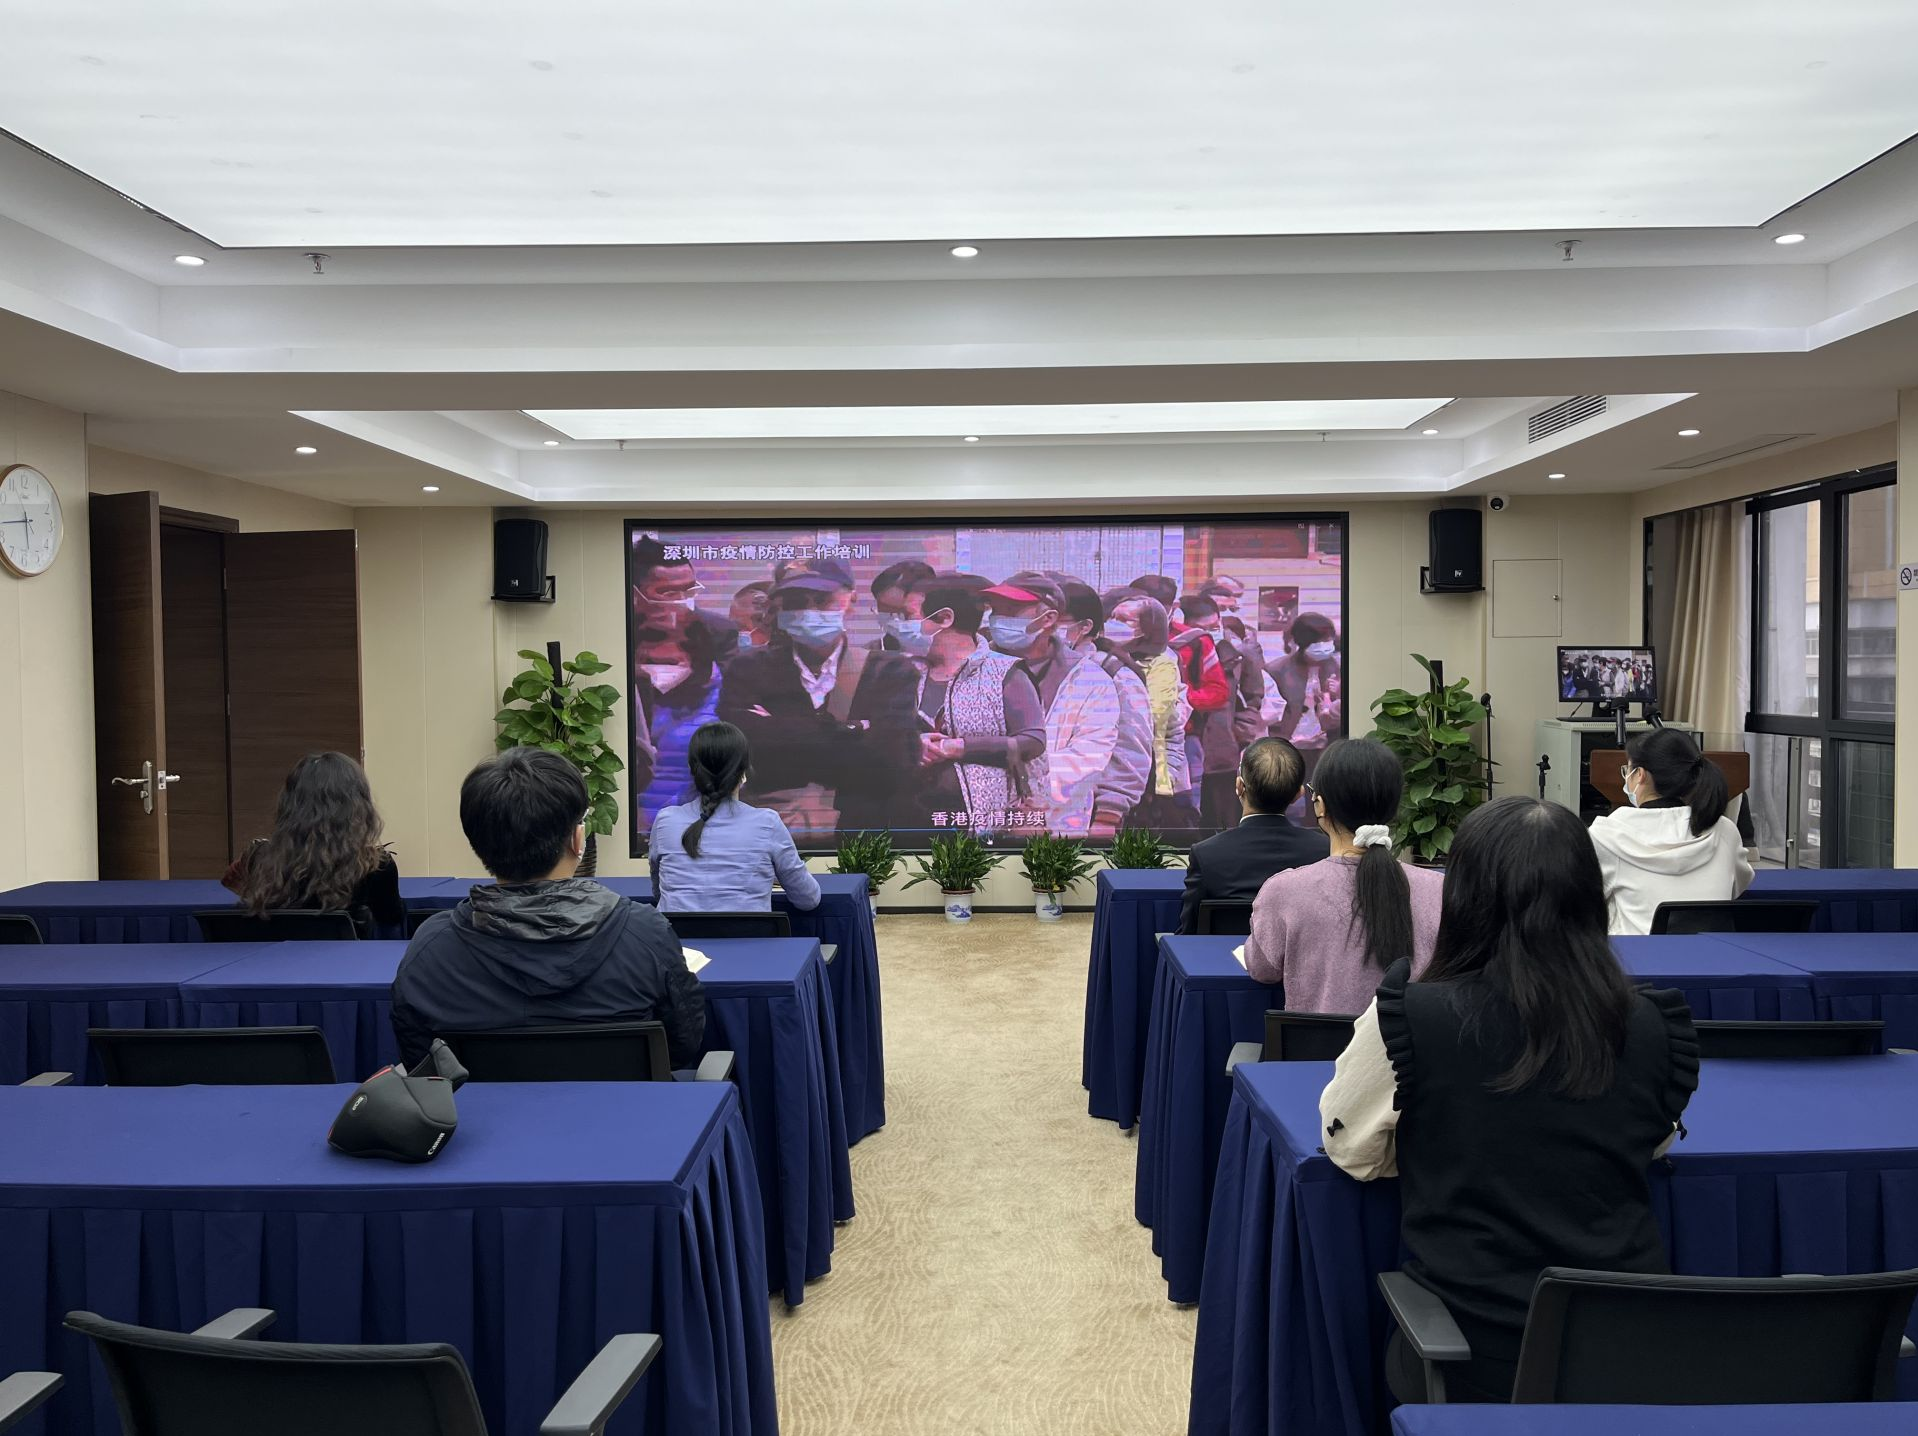 深圳第三期五堂疫情防控培训课在线开课， 将推出防疫经典案例视频等自学课程